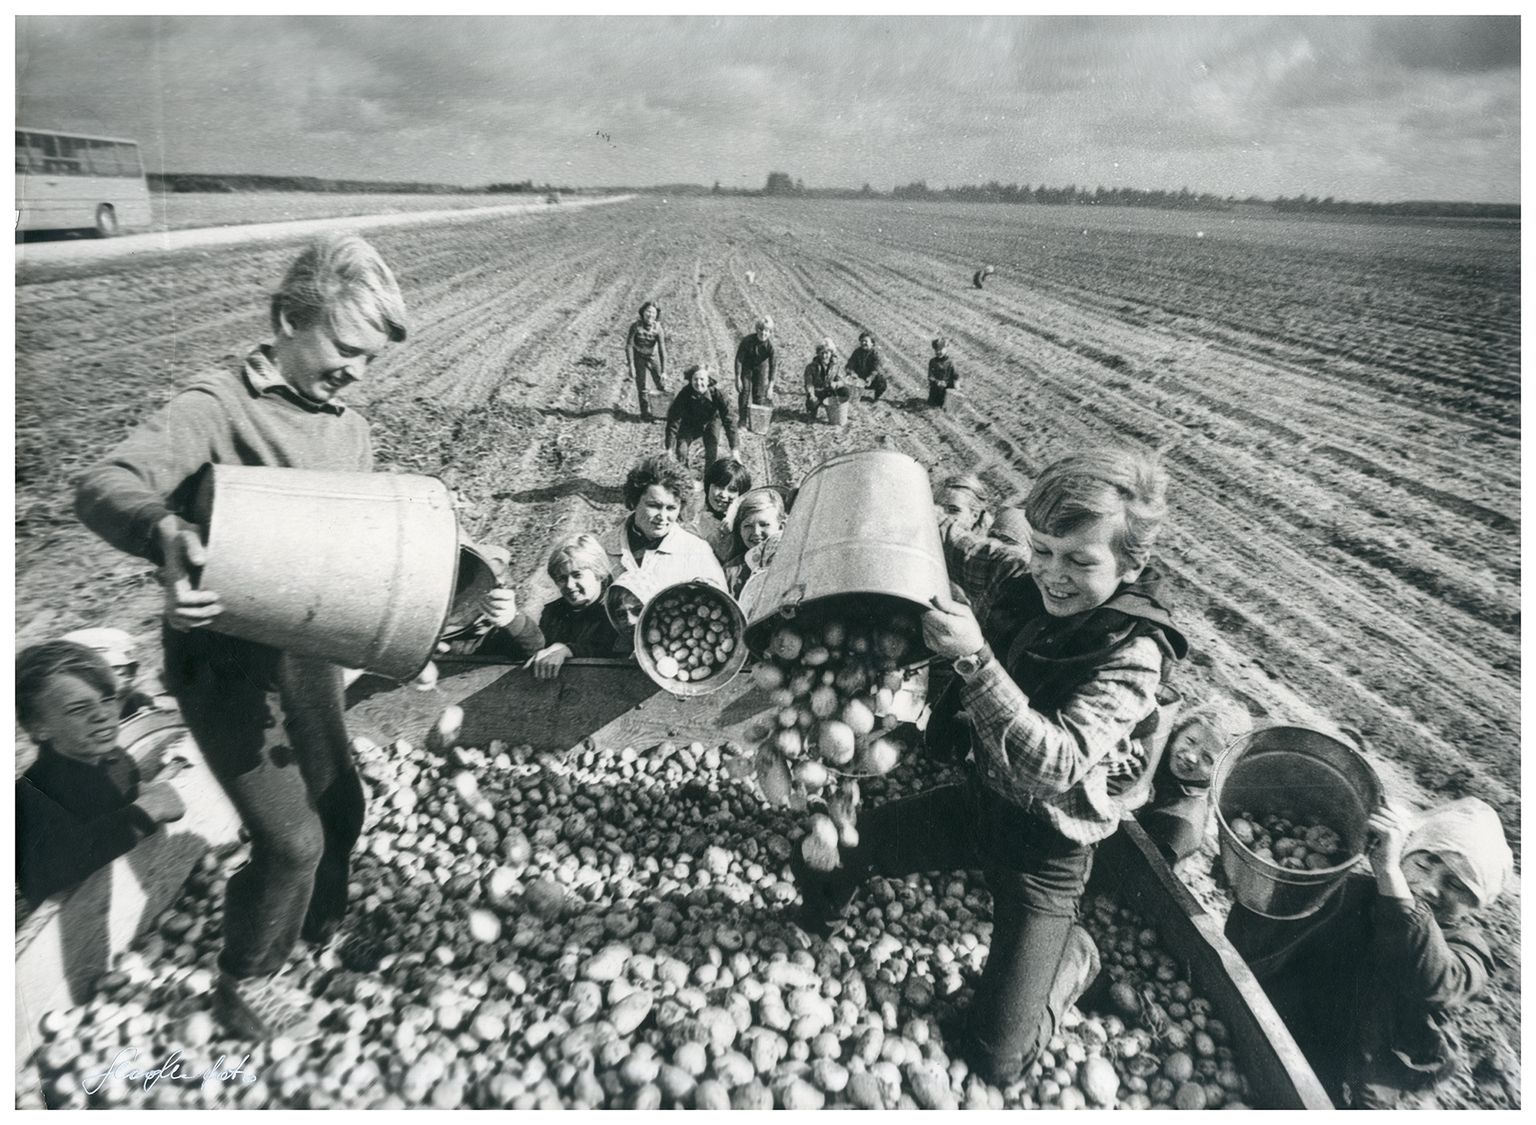 Uulu kooli lapsed Suursoo kartulipõllul, 1984. Henn sai selle kaadri eest 1985. aastal NSVLi rahvamajanduse näituse pronksmedali koos tunnistusega. Sama pilt sai Eesti–Soome foto maavõist­luse esikoha “Huumori­foto-88” seerias. Soome žürii pidas seda naljafotoks.